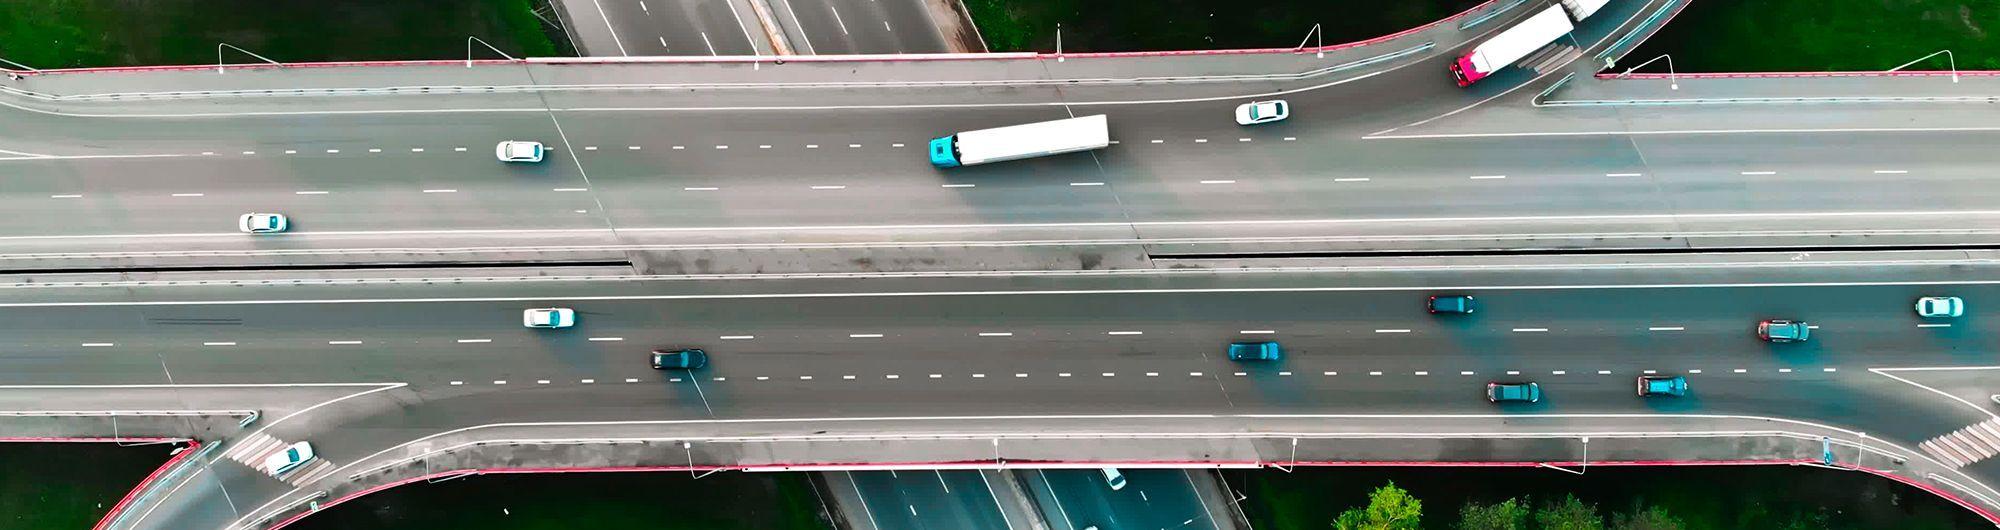 carros sob rodovia se movimentando em paisagem urbana